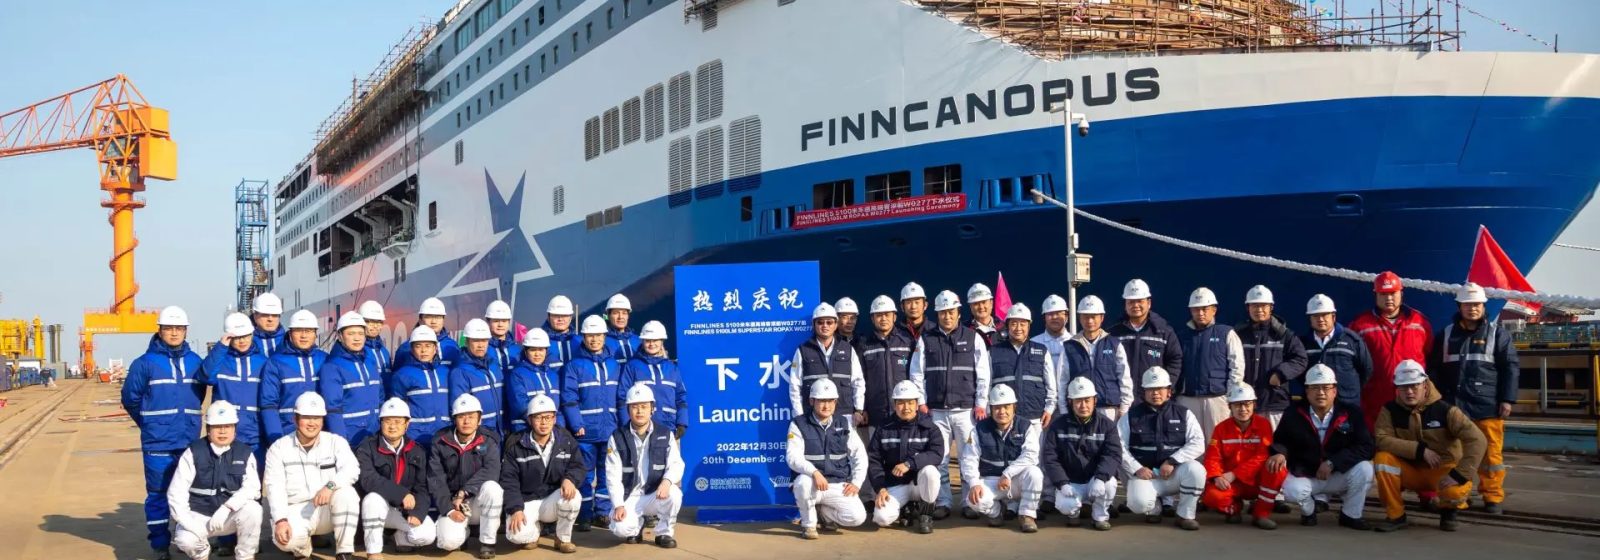 Tewaterlating 'Finncanopus' van Finnlines in China